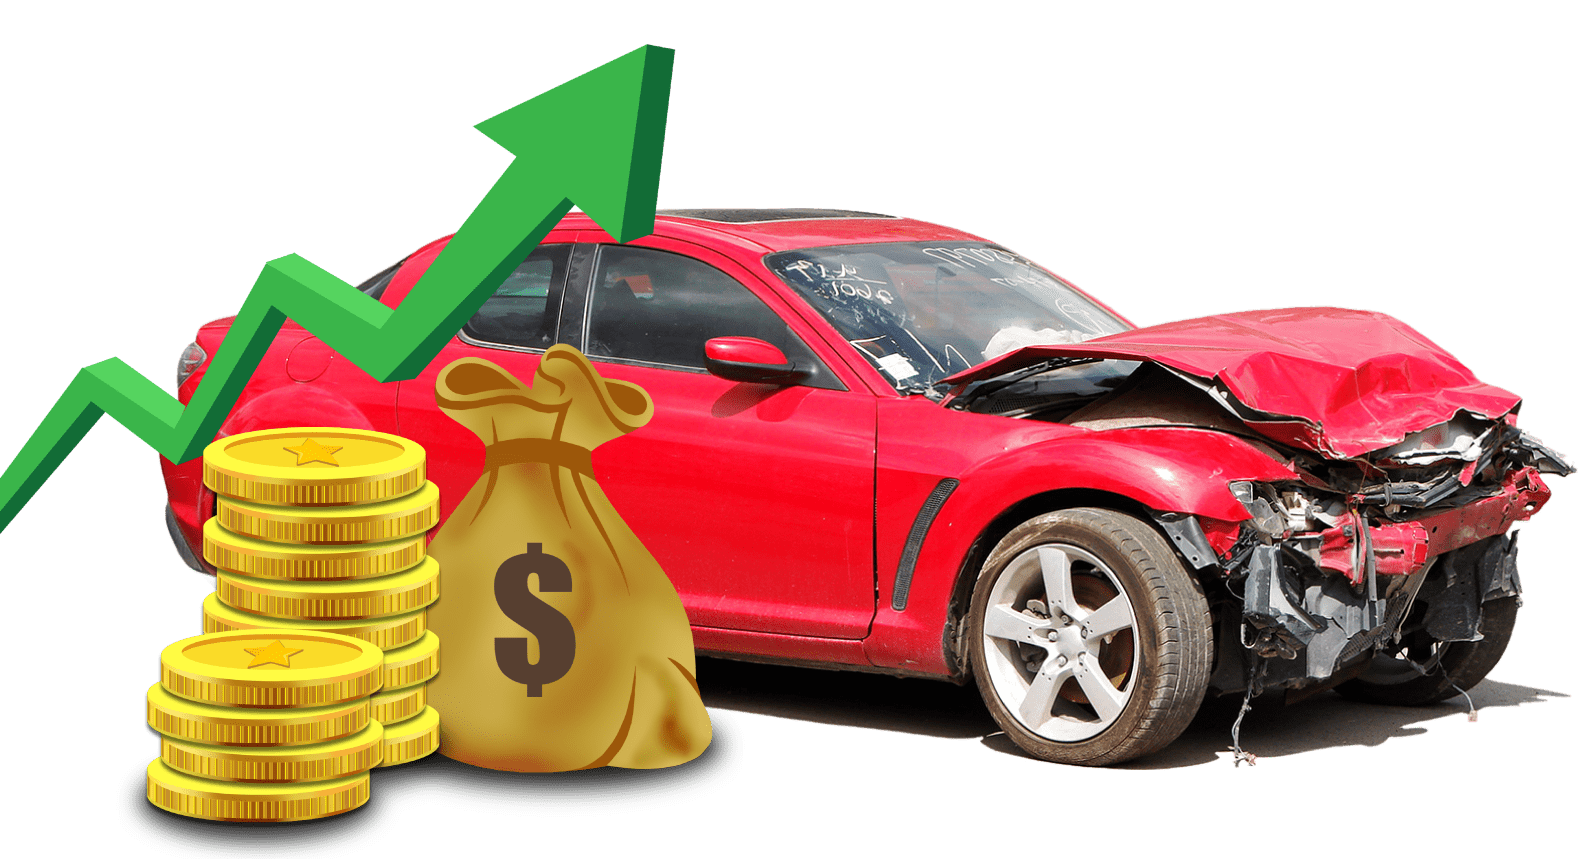  Cash for junk cars Sumner